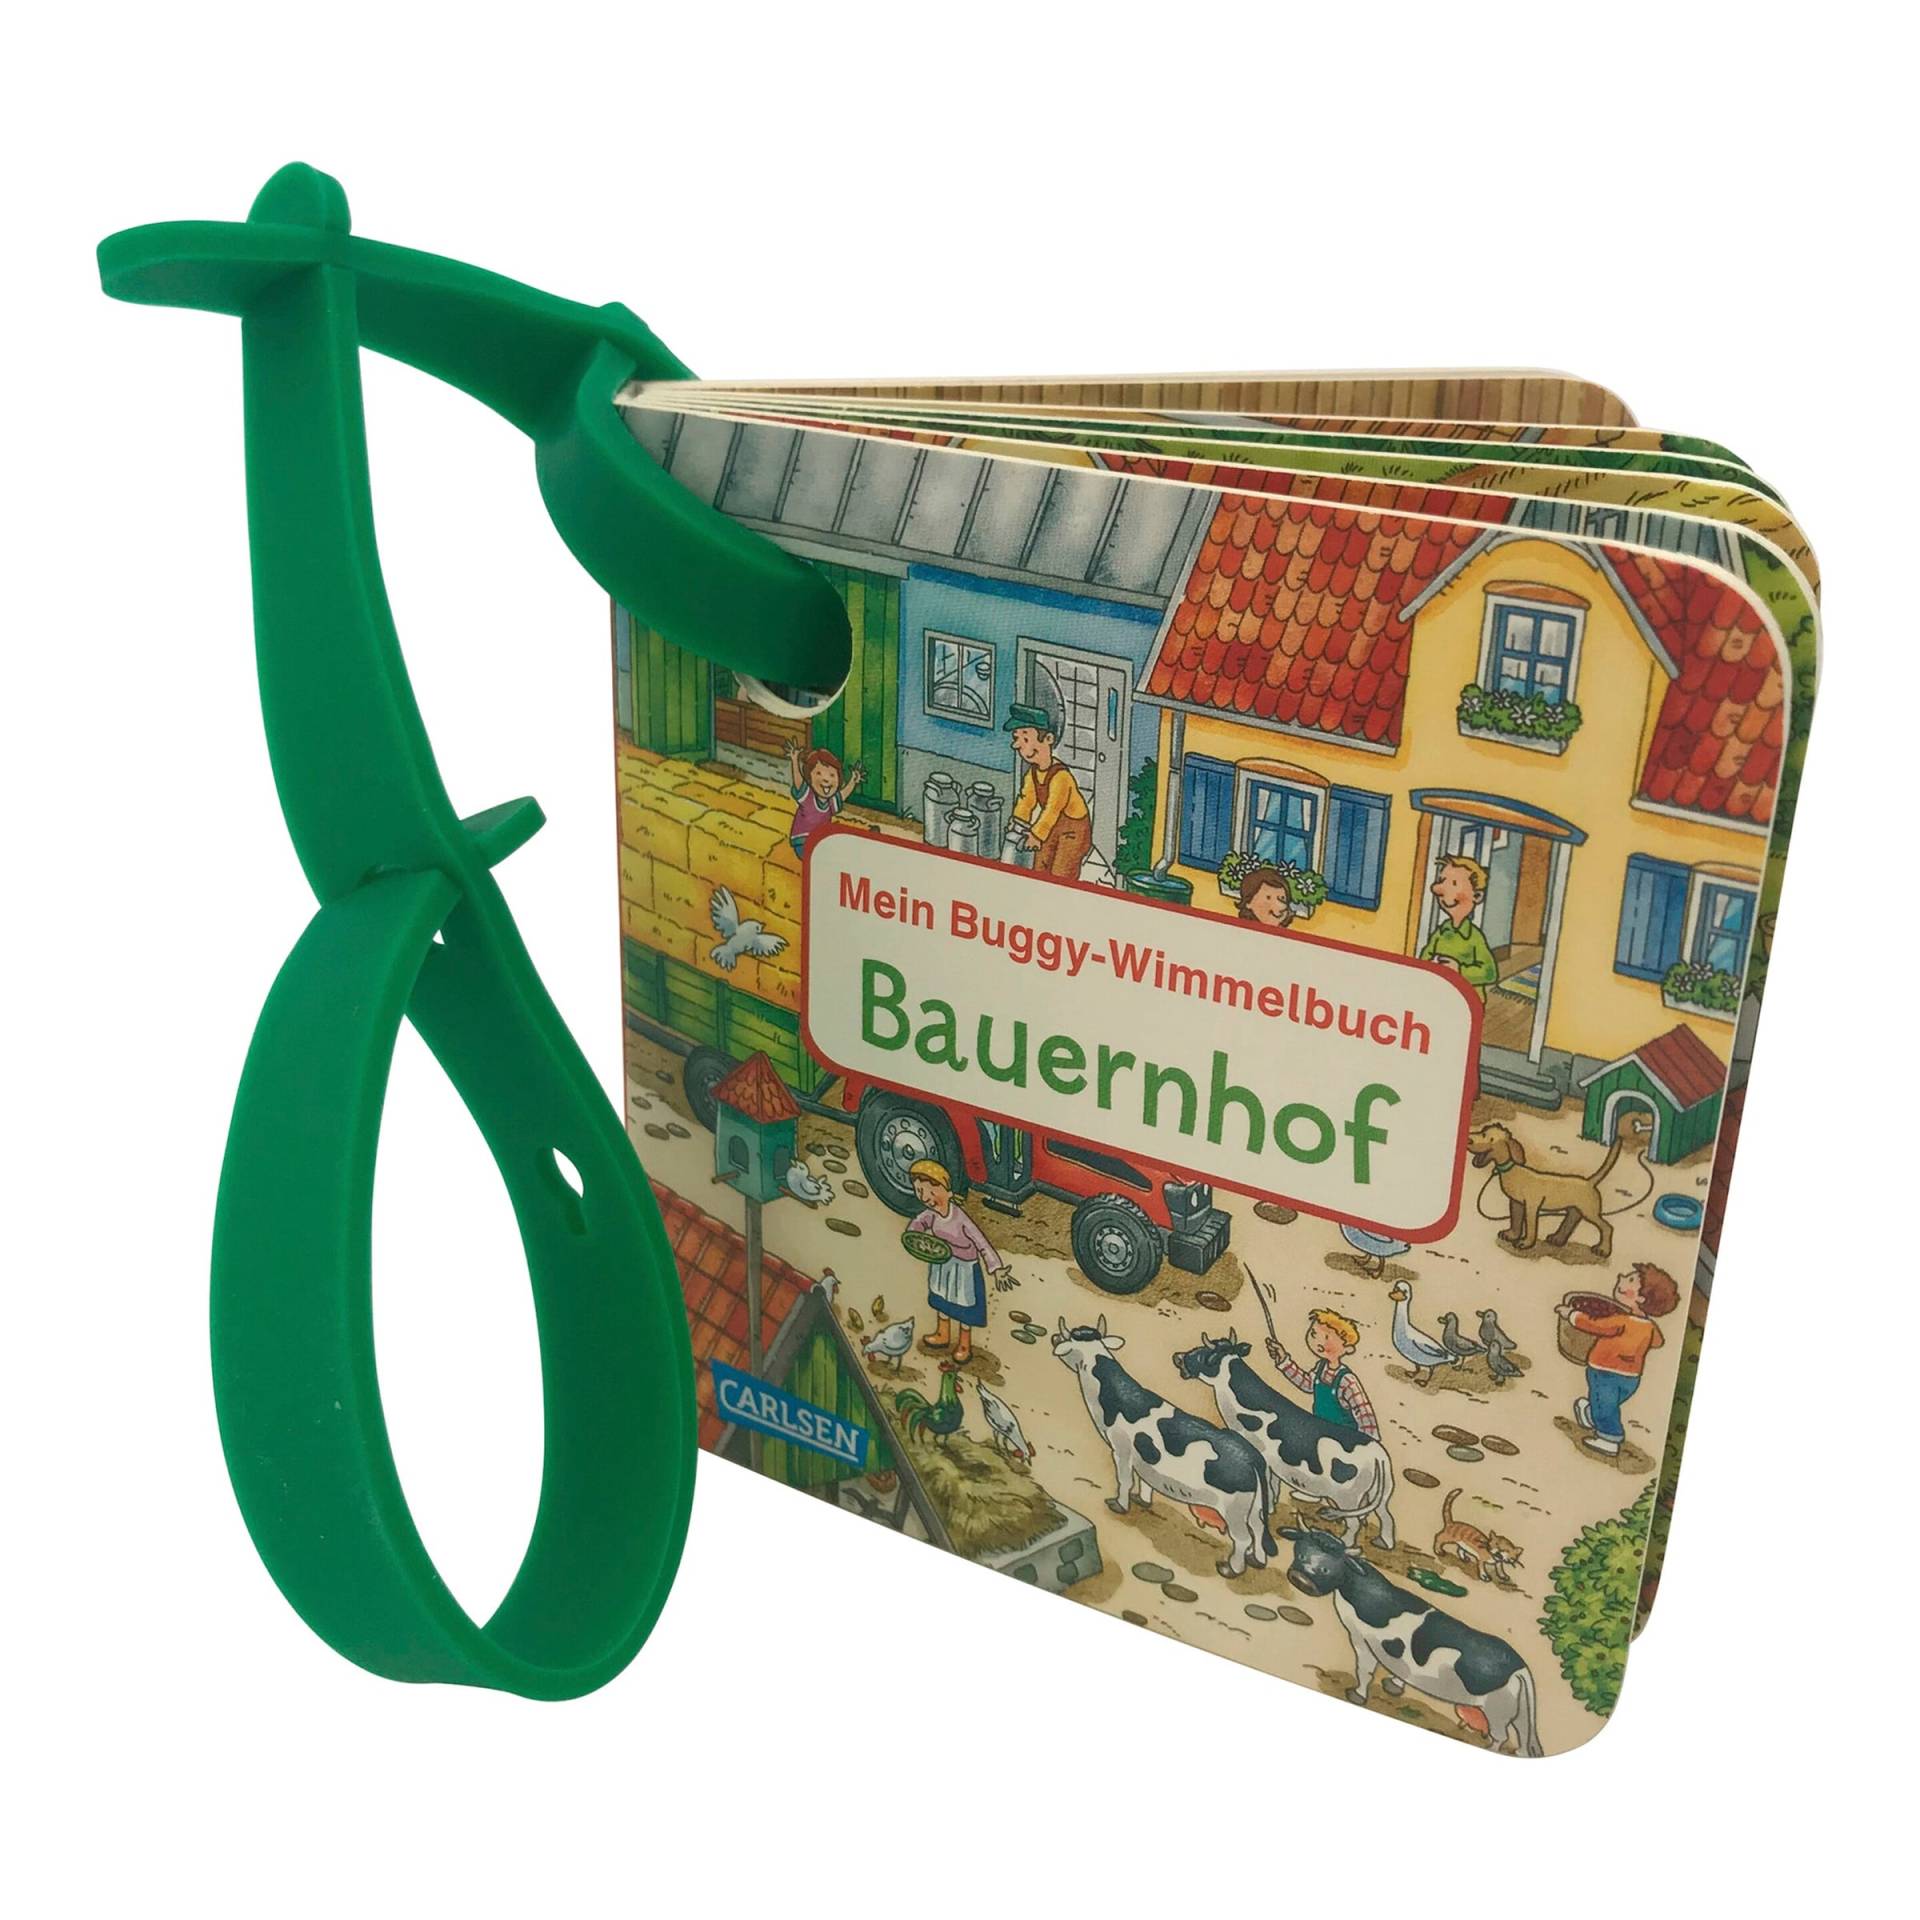 Mein Buggy-Wimmelbuch - Bauernhof von Carlsen Verlag